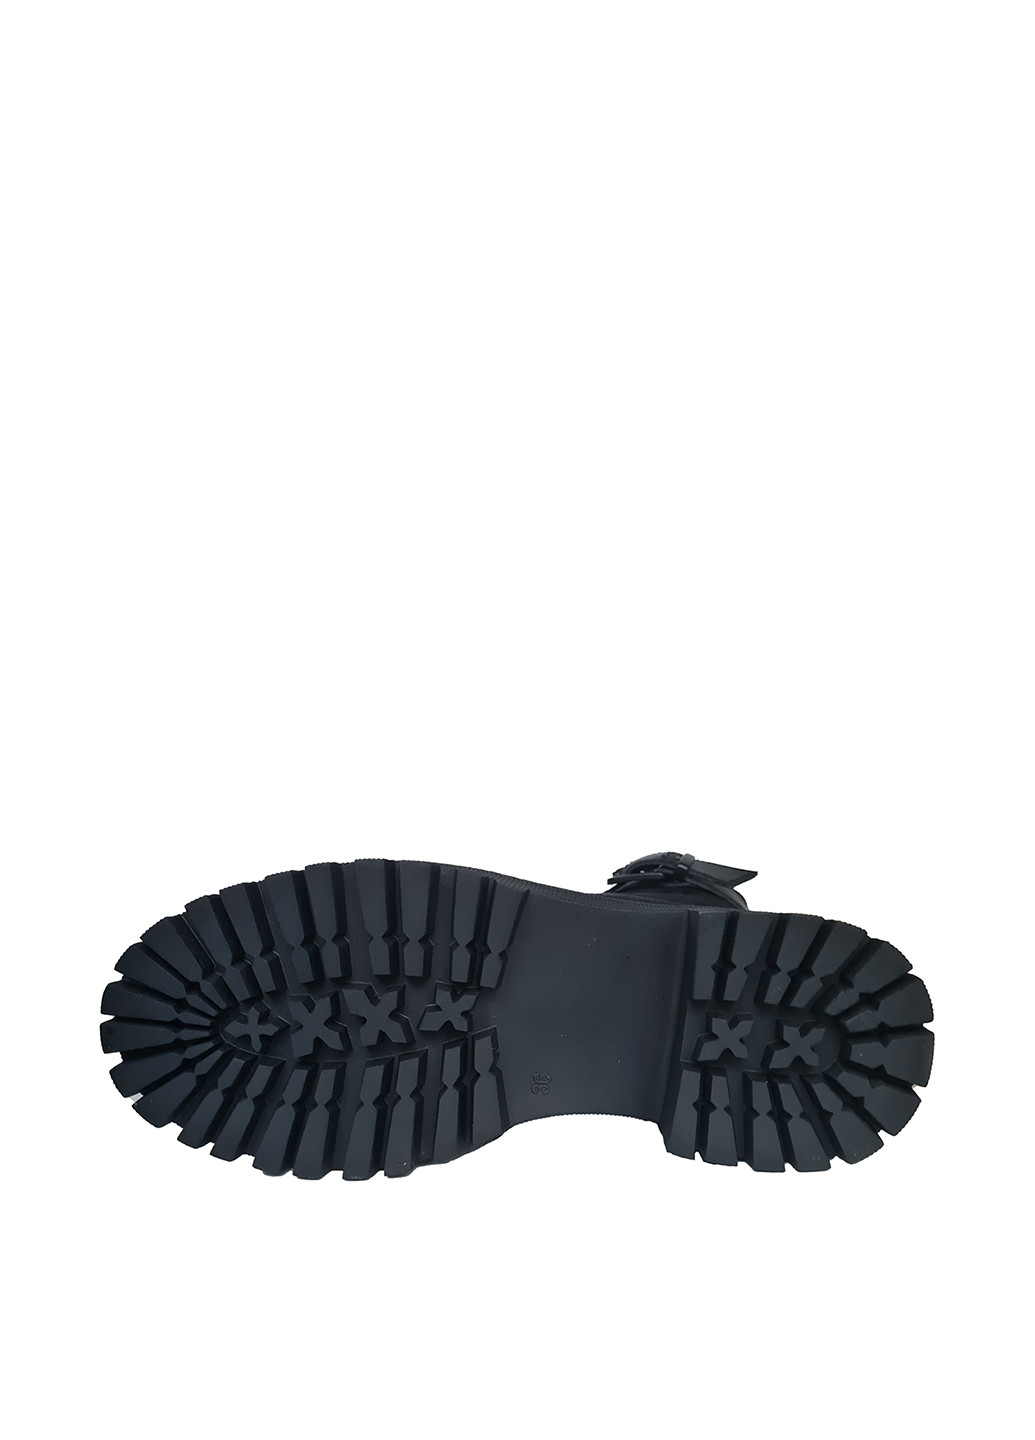 Зимние ботинки берцы Egga со шнуровкой, с пряжкой из натуральной замши